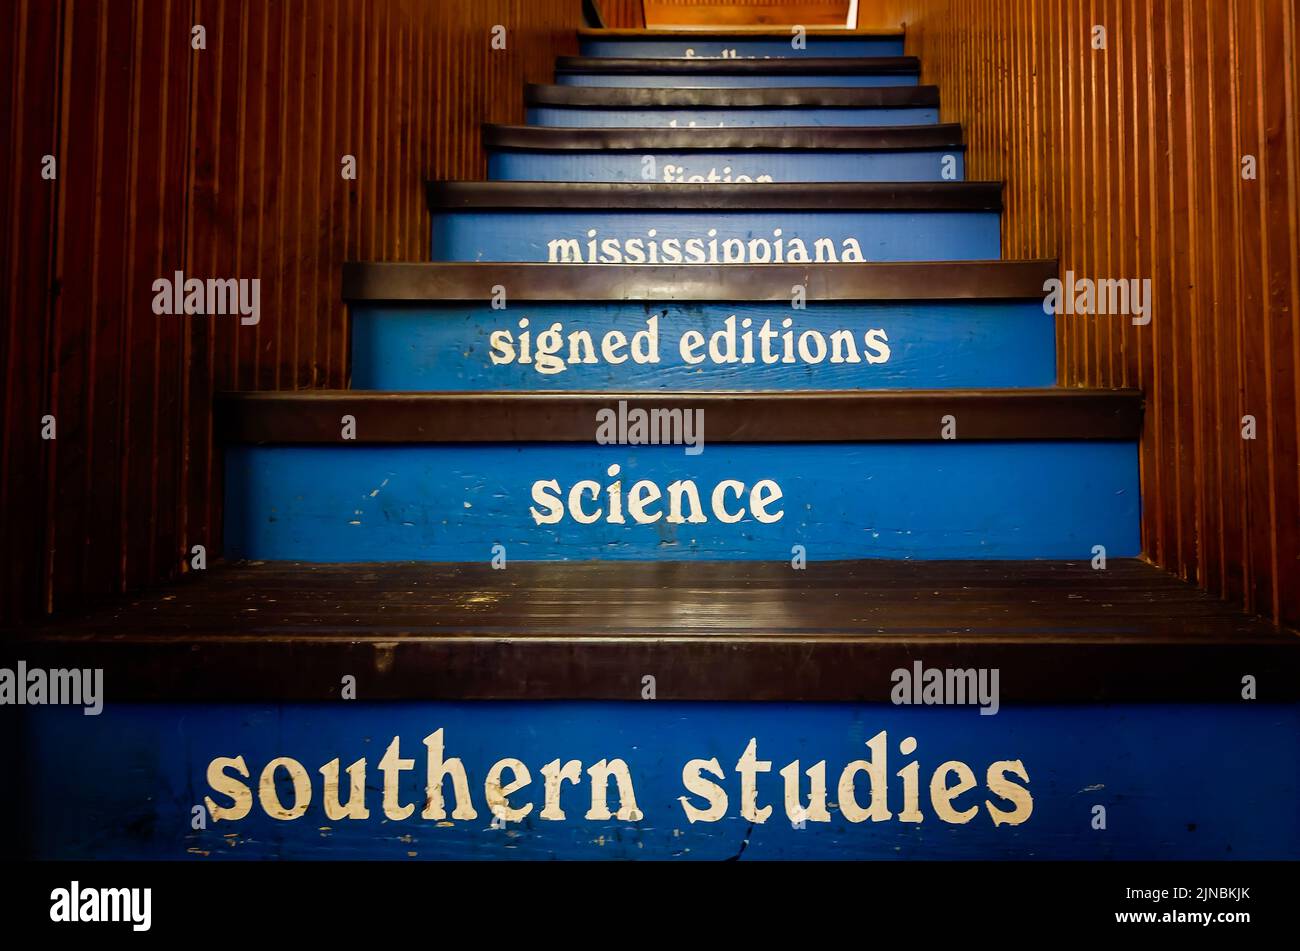 La scala a Square Books è etichettata con soggetti che spaziano dagli Studi del Sud alle Edizioni firmate e al Mississipppiana a Oxford, Mississippi. Foto Stock